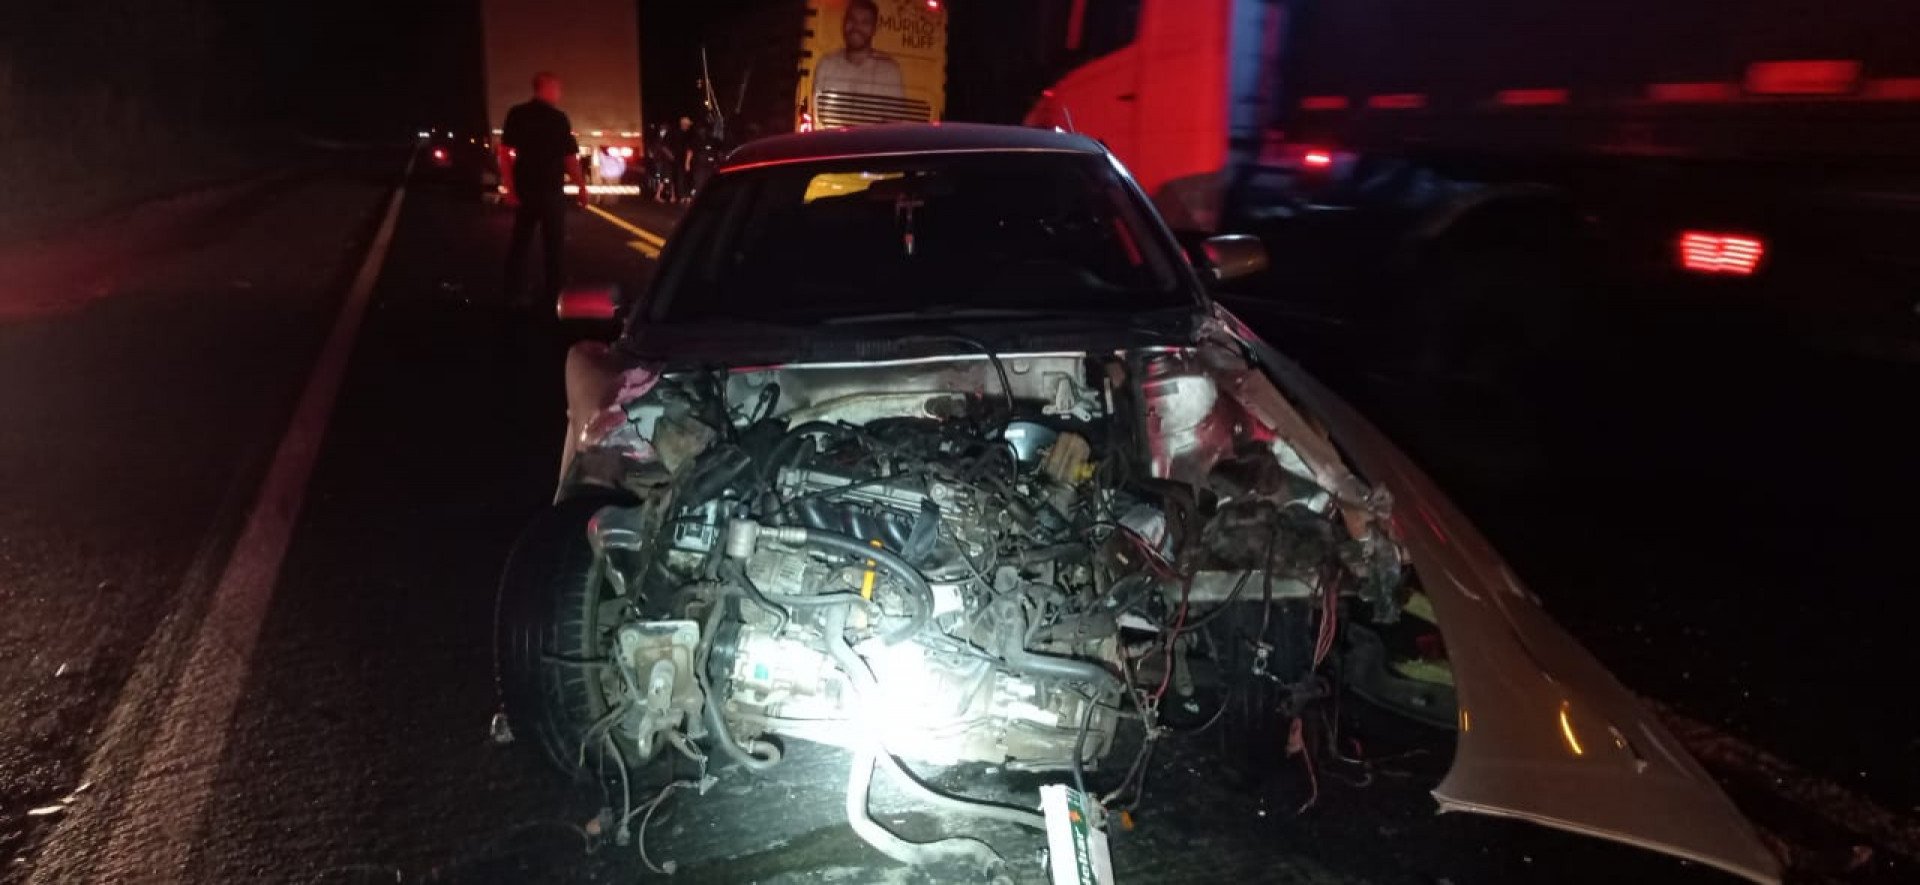 Ônibus da equipe de Murilo Huff se envolveu em um acidente com um veículo de passeio na noite desta quinta-feira - PRF / Divulgação